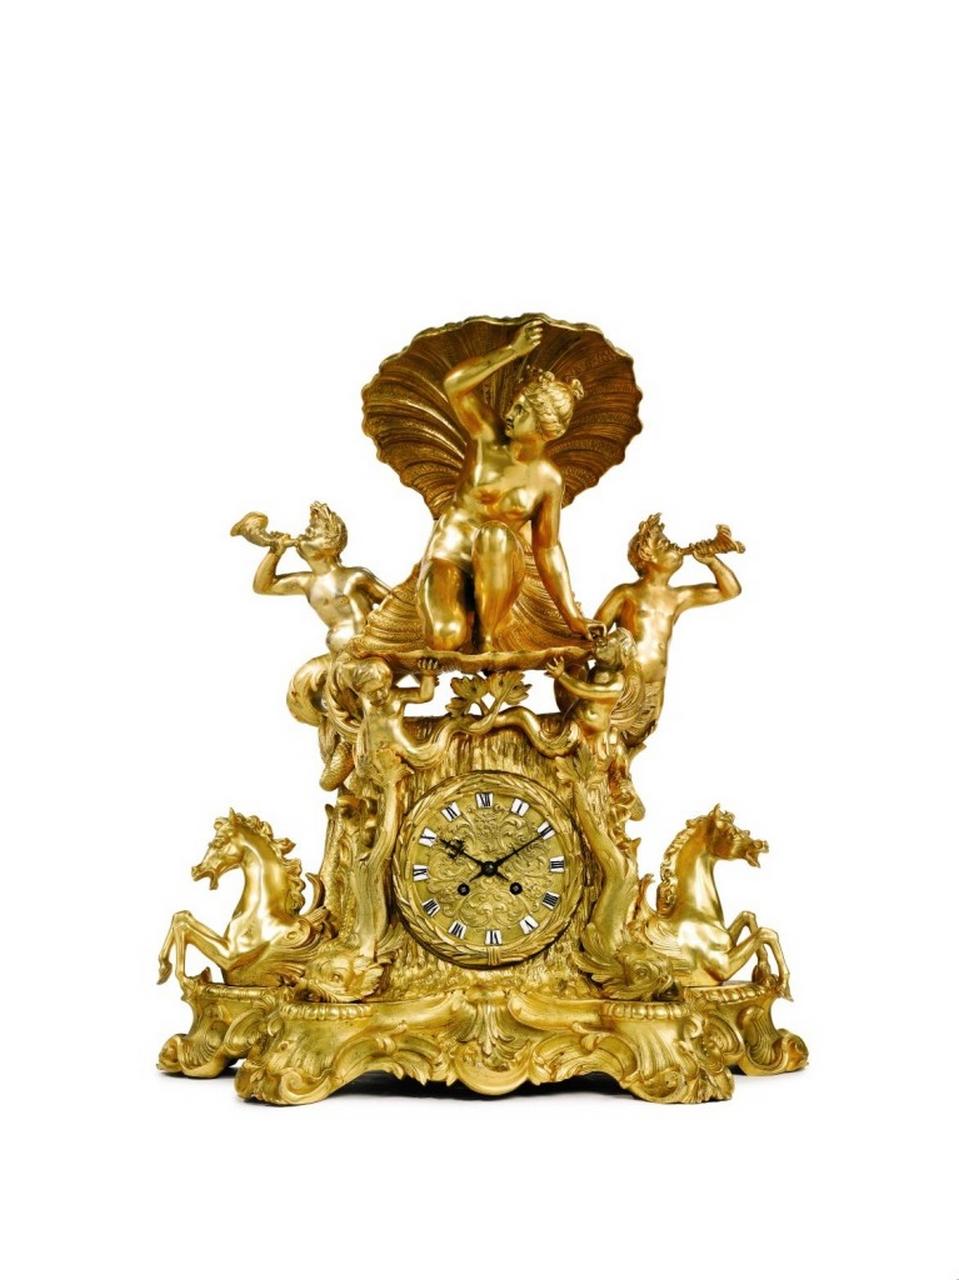 Der folgende Artikel, den wir anbieten, ist eine große und beeindruckende 19. Jahrhundert Museum Qualität Louis XVI Französisch Ormolu, patiniert Bronze vergoldet Bronze Mantel Uhr, die die Geburt der Venus, prächtig mit exquisiten und